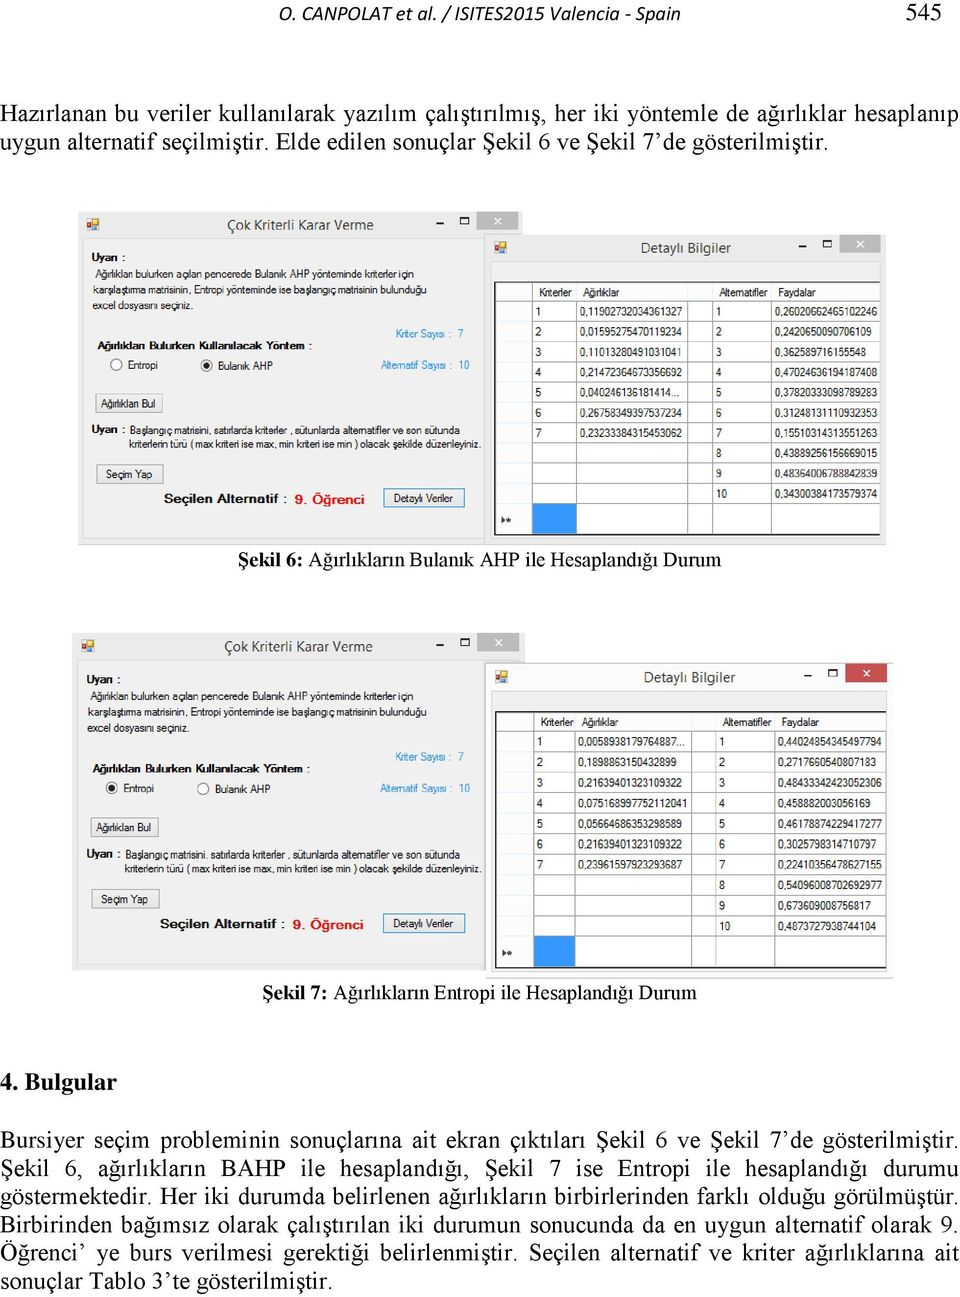 Bulgular Bursiyer seçim probleminin sonuçlarına ait ekran çıktıları Şekil 6 ve Şekil 7 de gösterilmiştir.